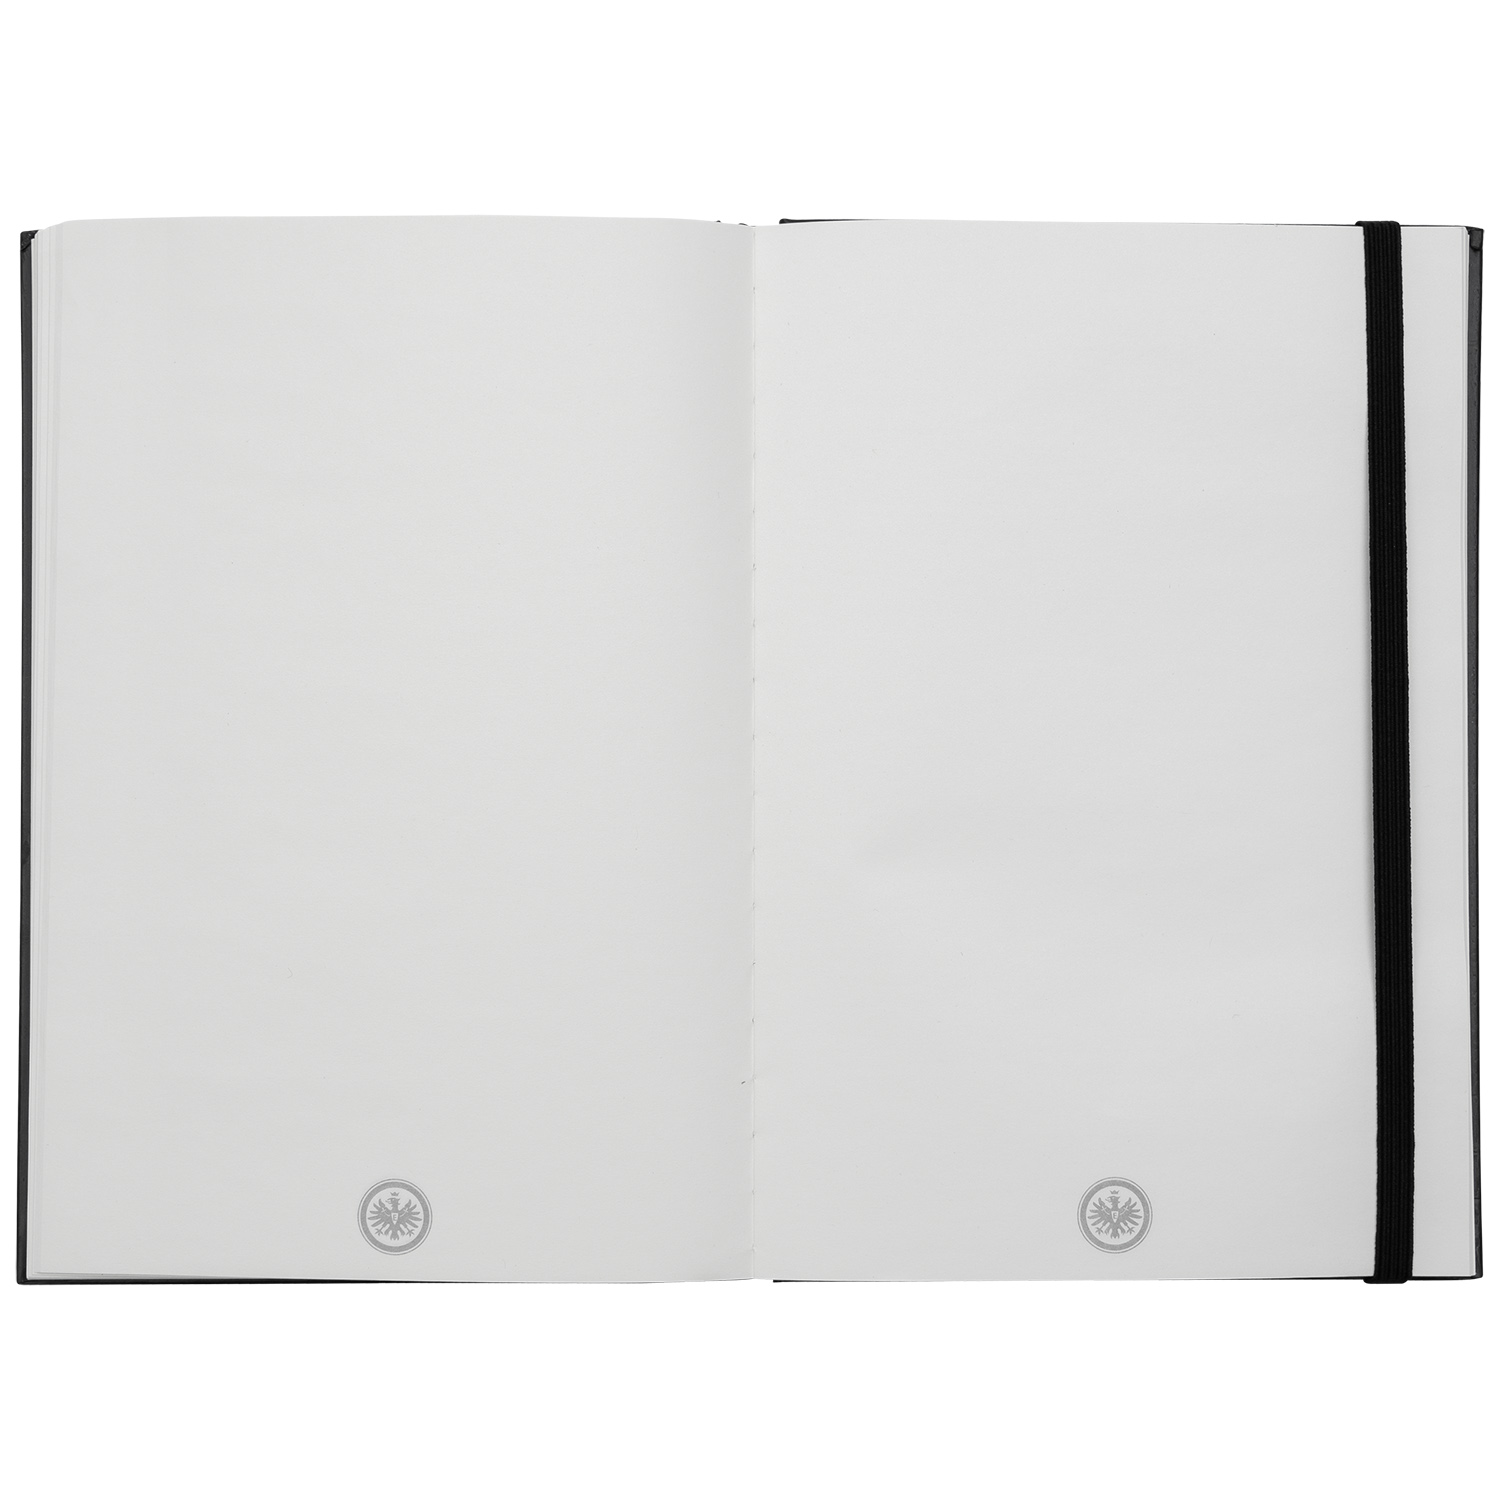 Bild 4: schwarzes Notizbuch, blanko